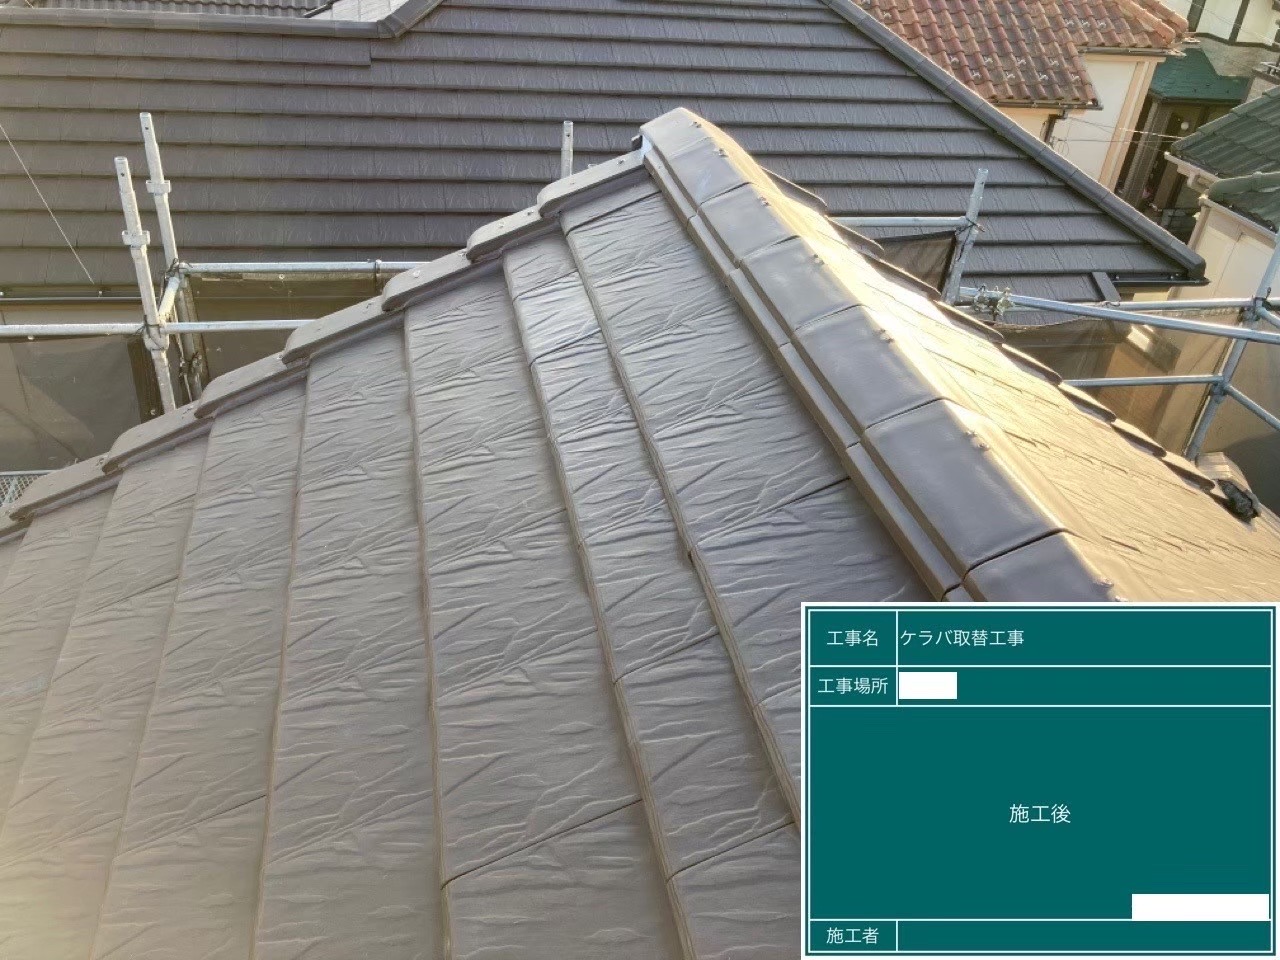 さいたま市大宮区にて屋根修理〈部分的に葺き直し工事〉の施工後写真